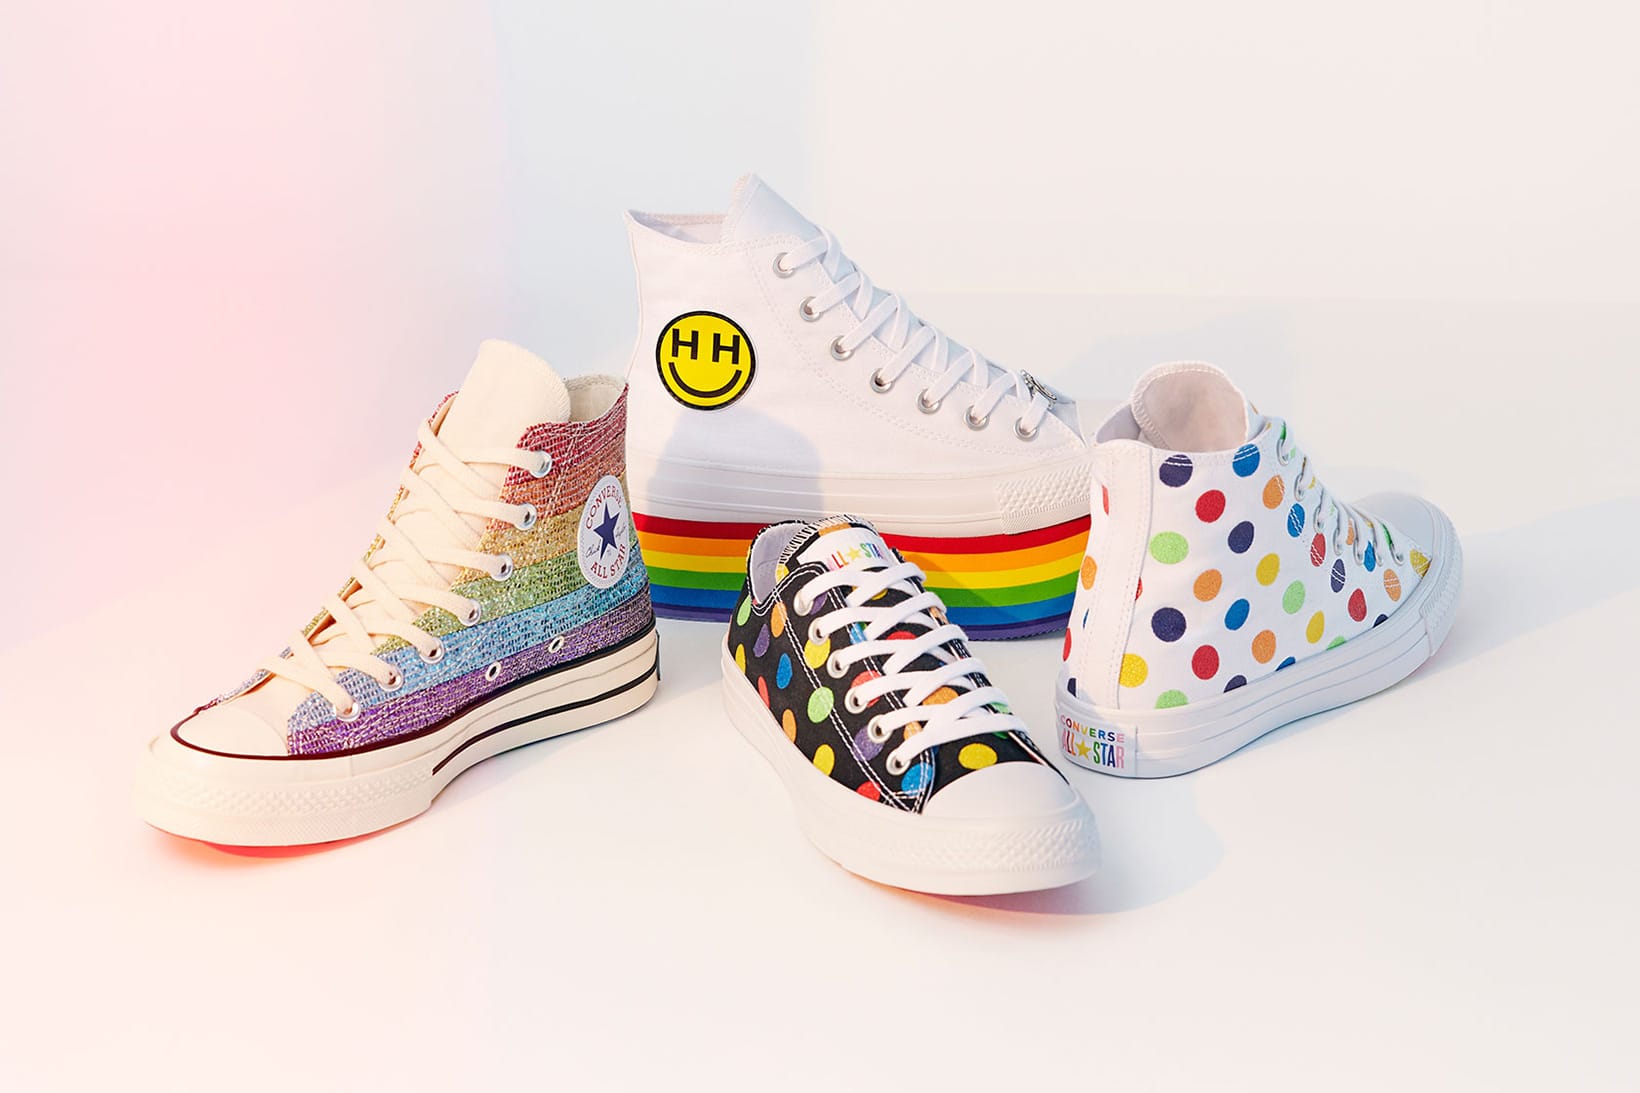 Miley Cyrus x Converse Pride Collection 